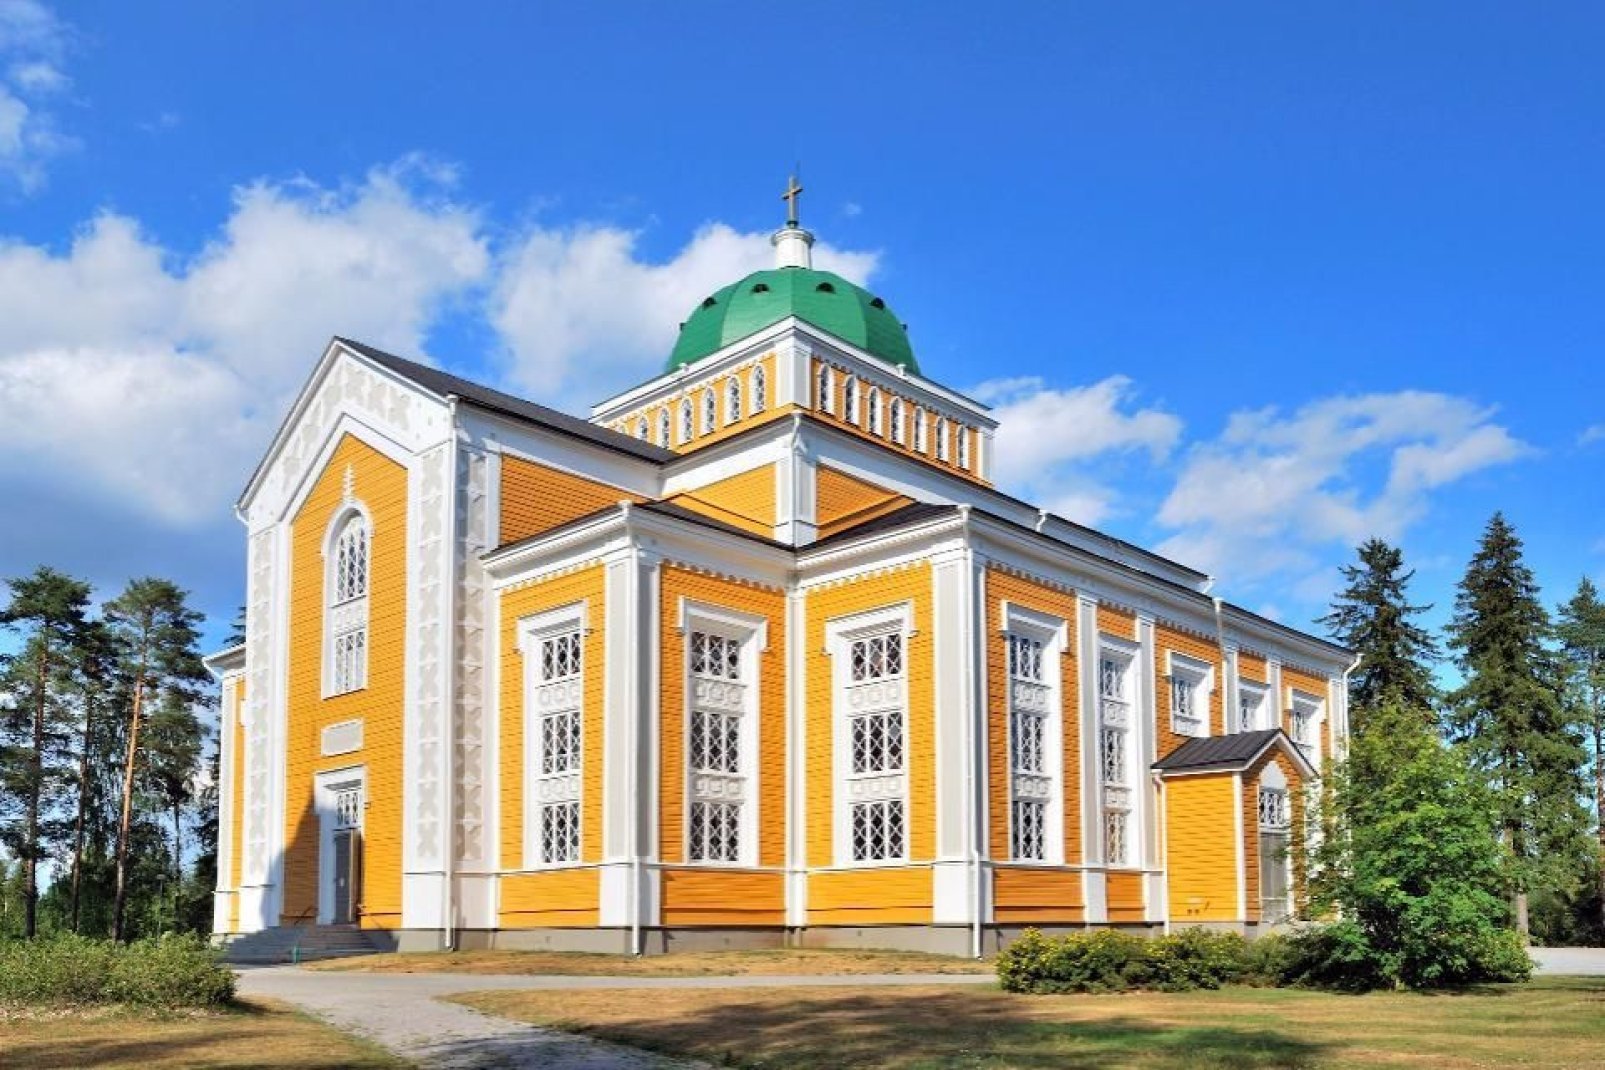 La chiesa di legno di Kerimaumlki è la più grande al mondo.